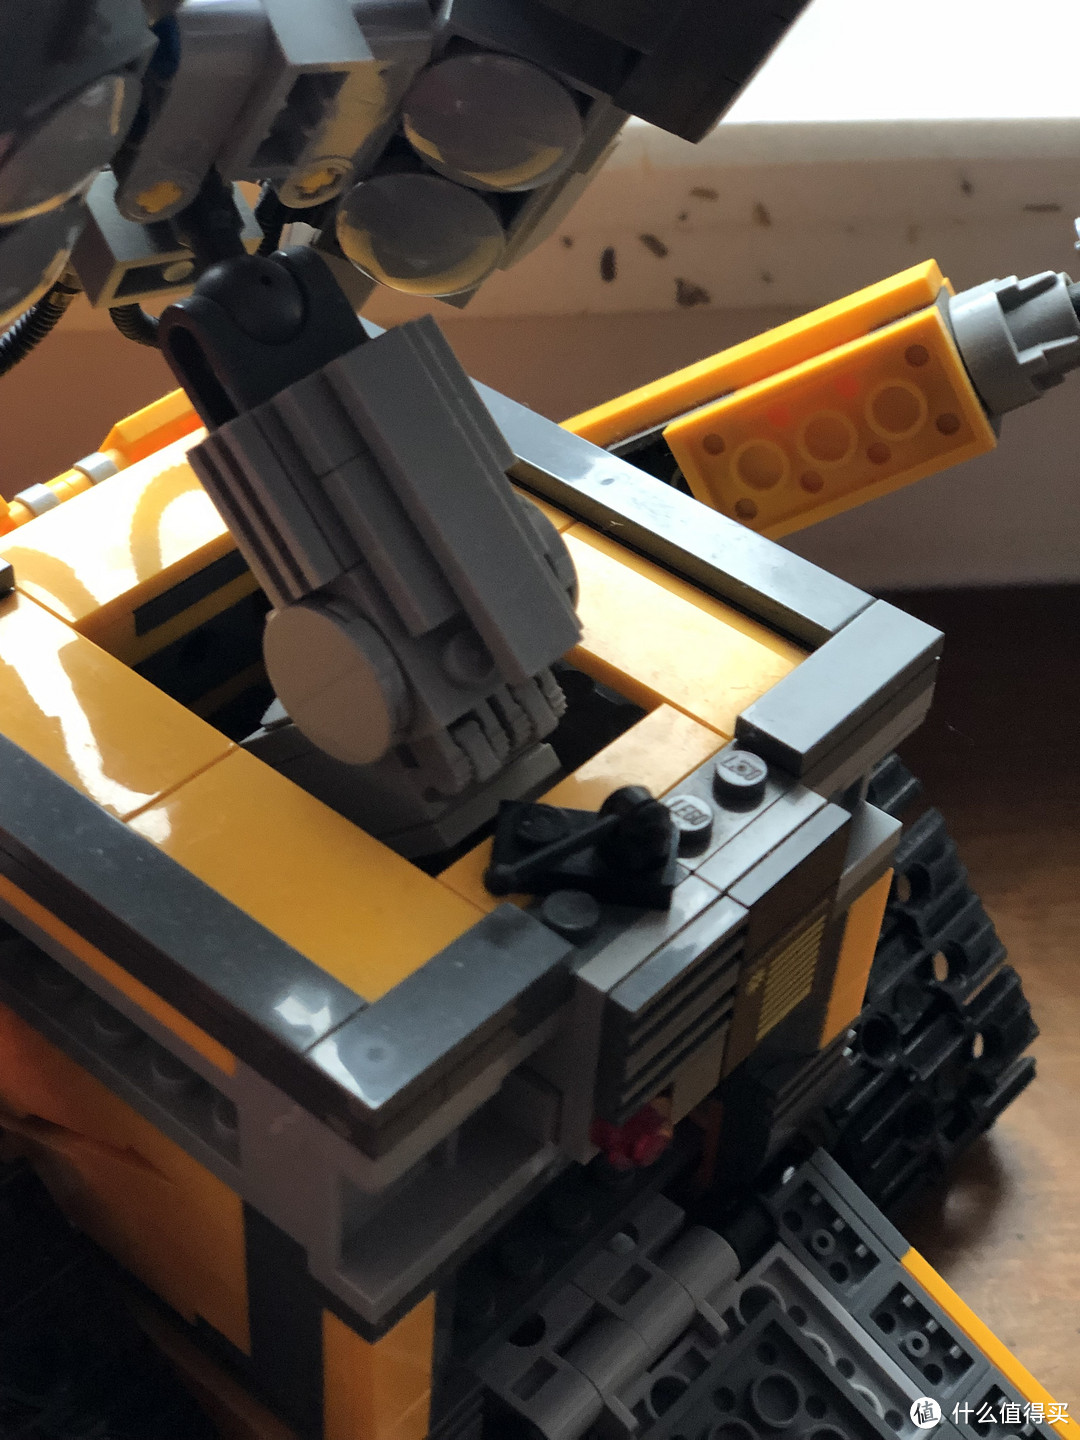 乐高21303 WALL-E的清洁、补件和重组记录